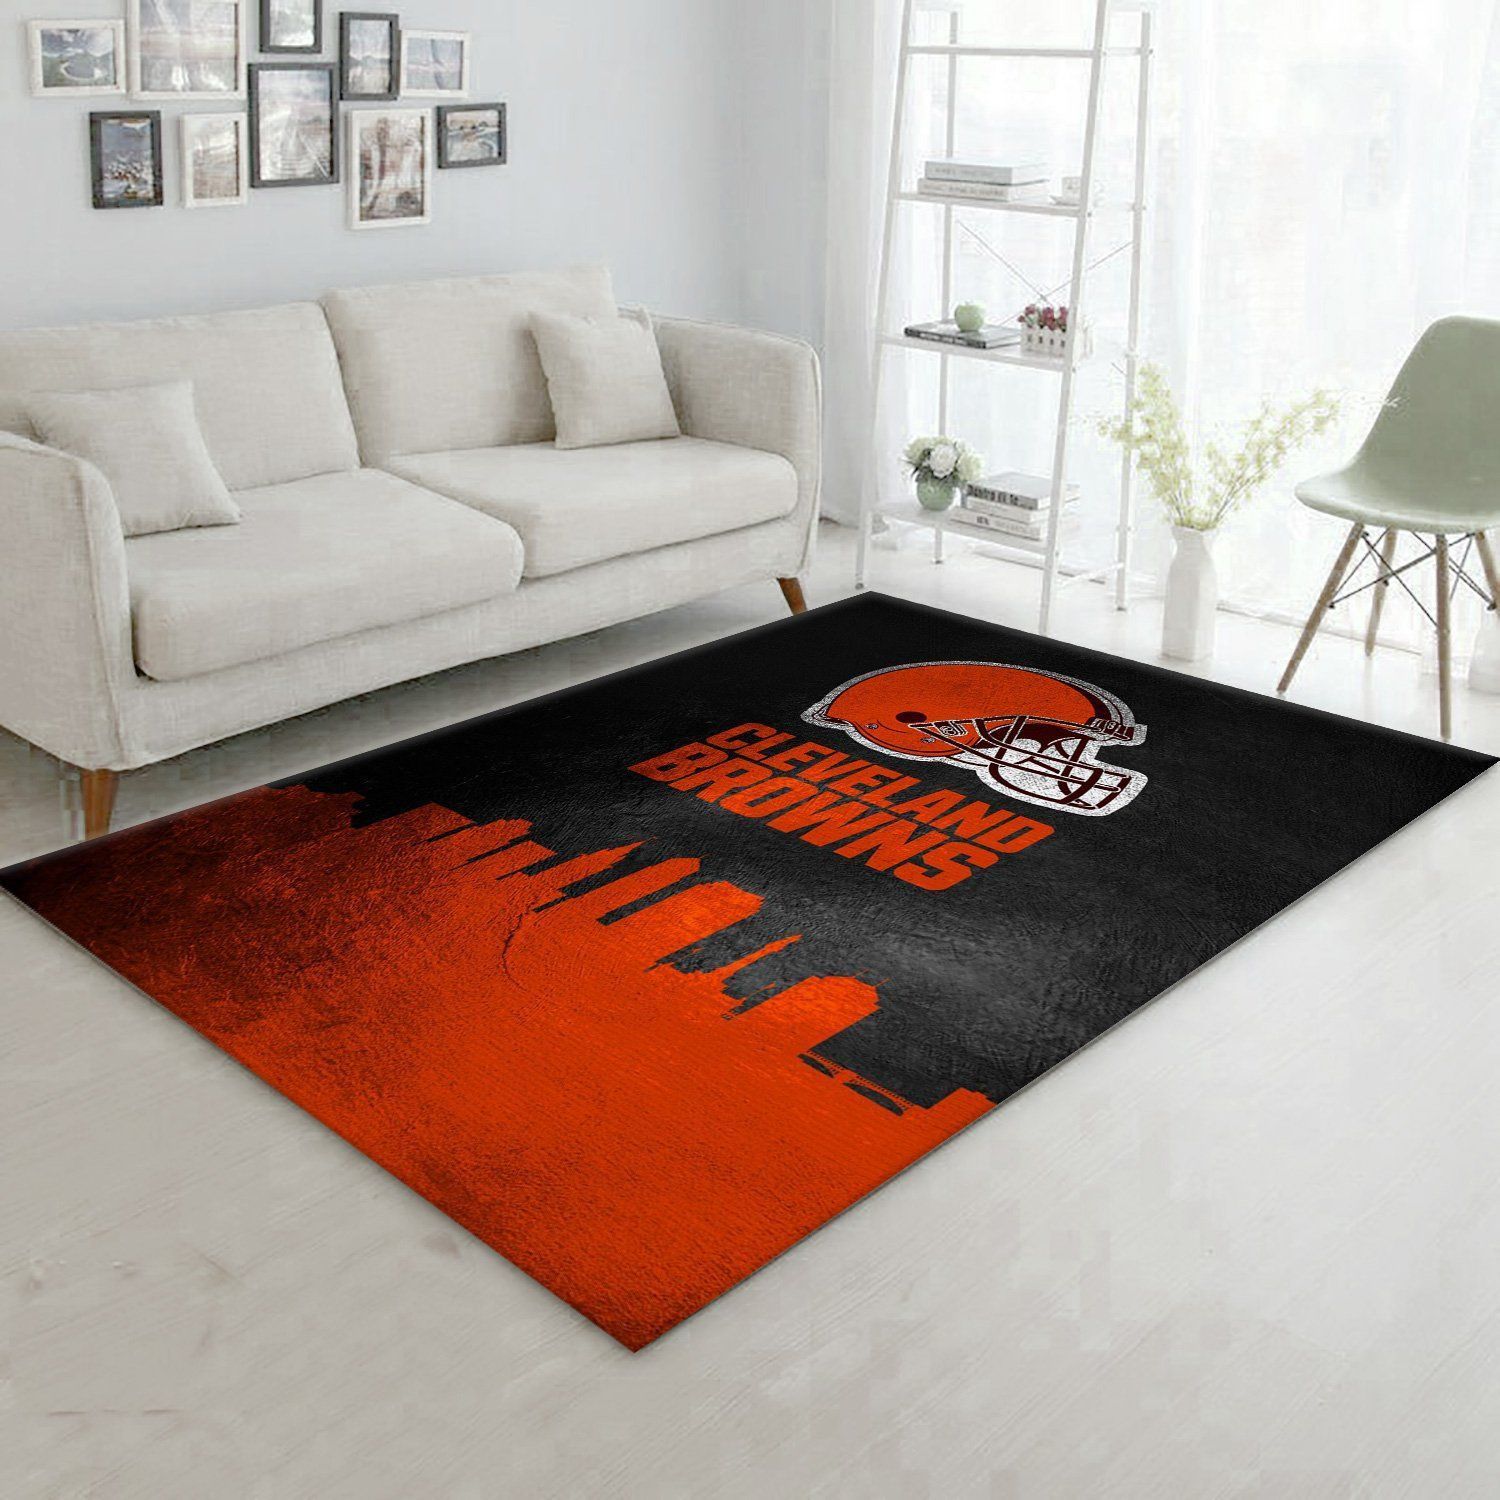 Cleveland Browns Skyline NFL Area Rug Carpet